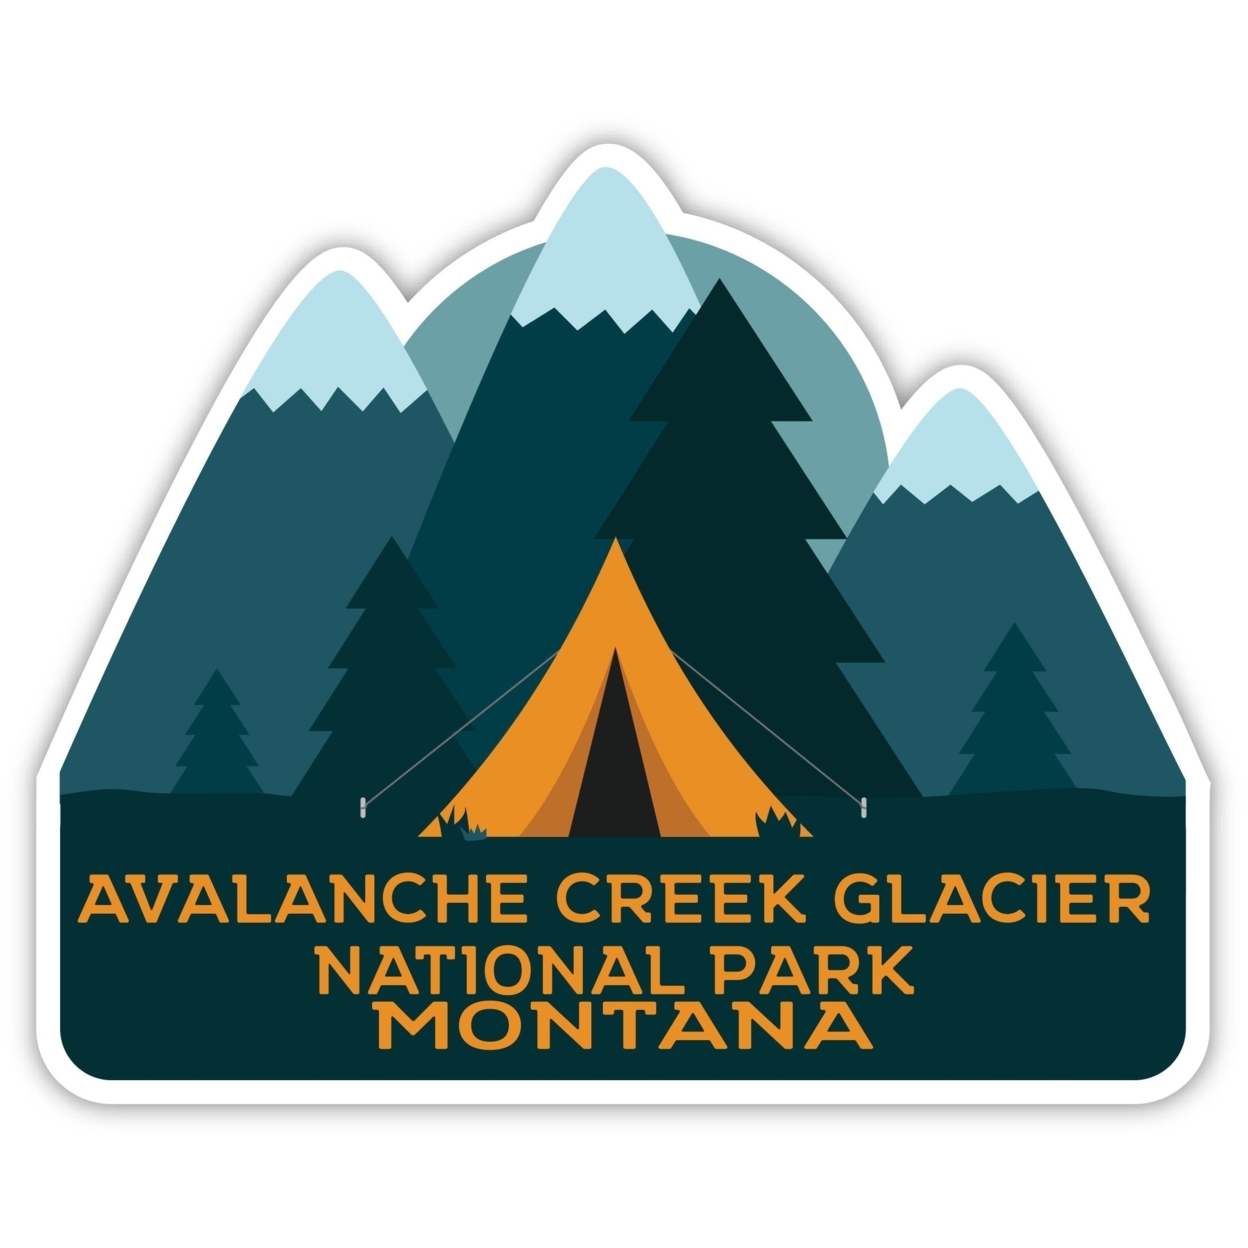 Avalanche Creek Glacier National Park Montana Souvenir Decorative Stickers (Choose Theme And Size) - Single Unit, 4-Inch, Tent